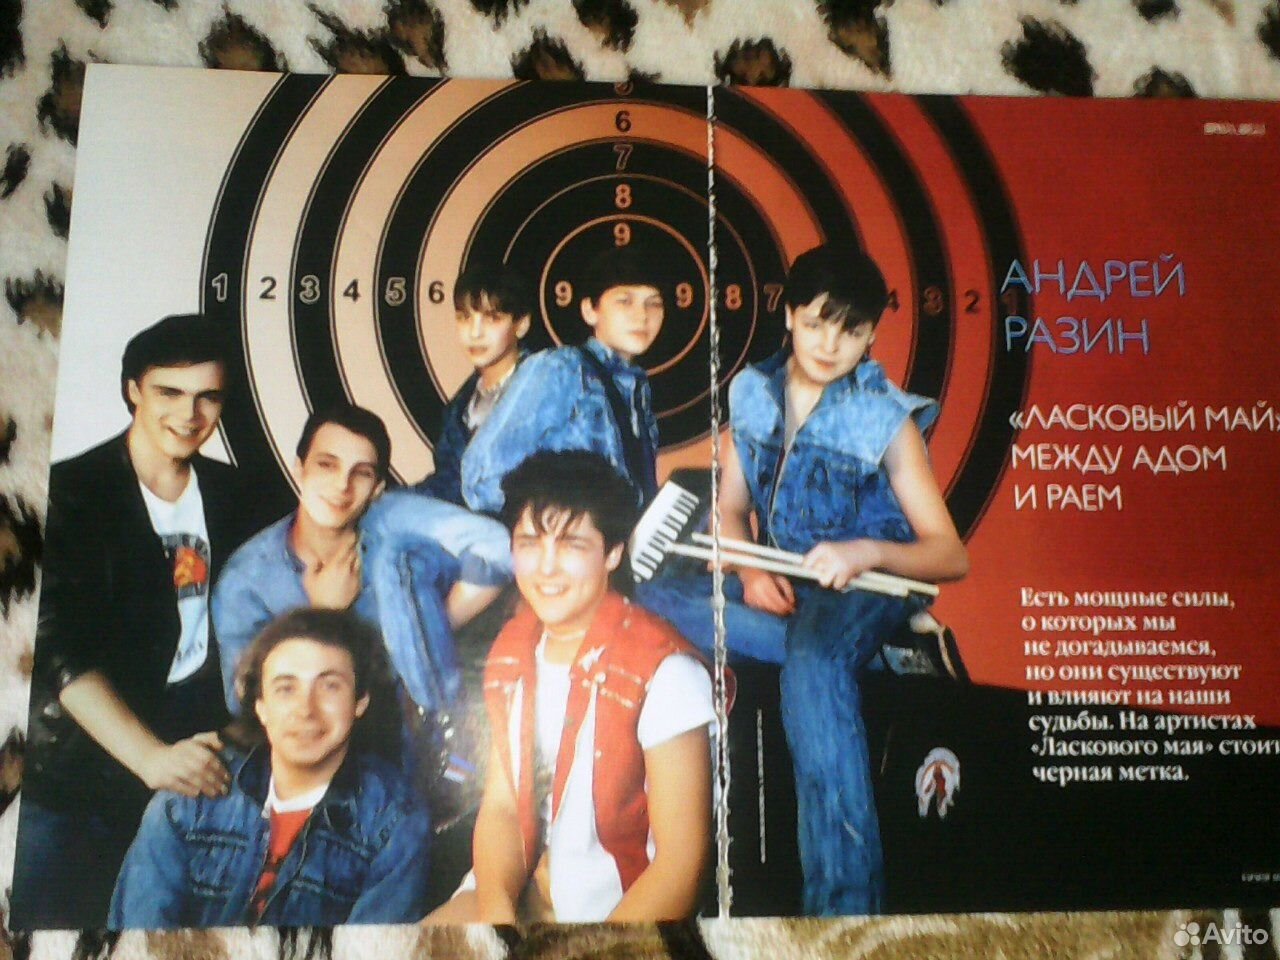 Первая группа ласковая мая. Группа ласковый май Постер. Ласковый май фото 1988. Ласковый май плакат.